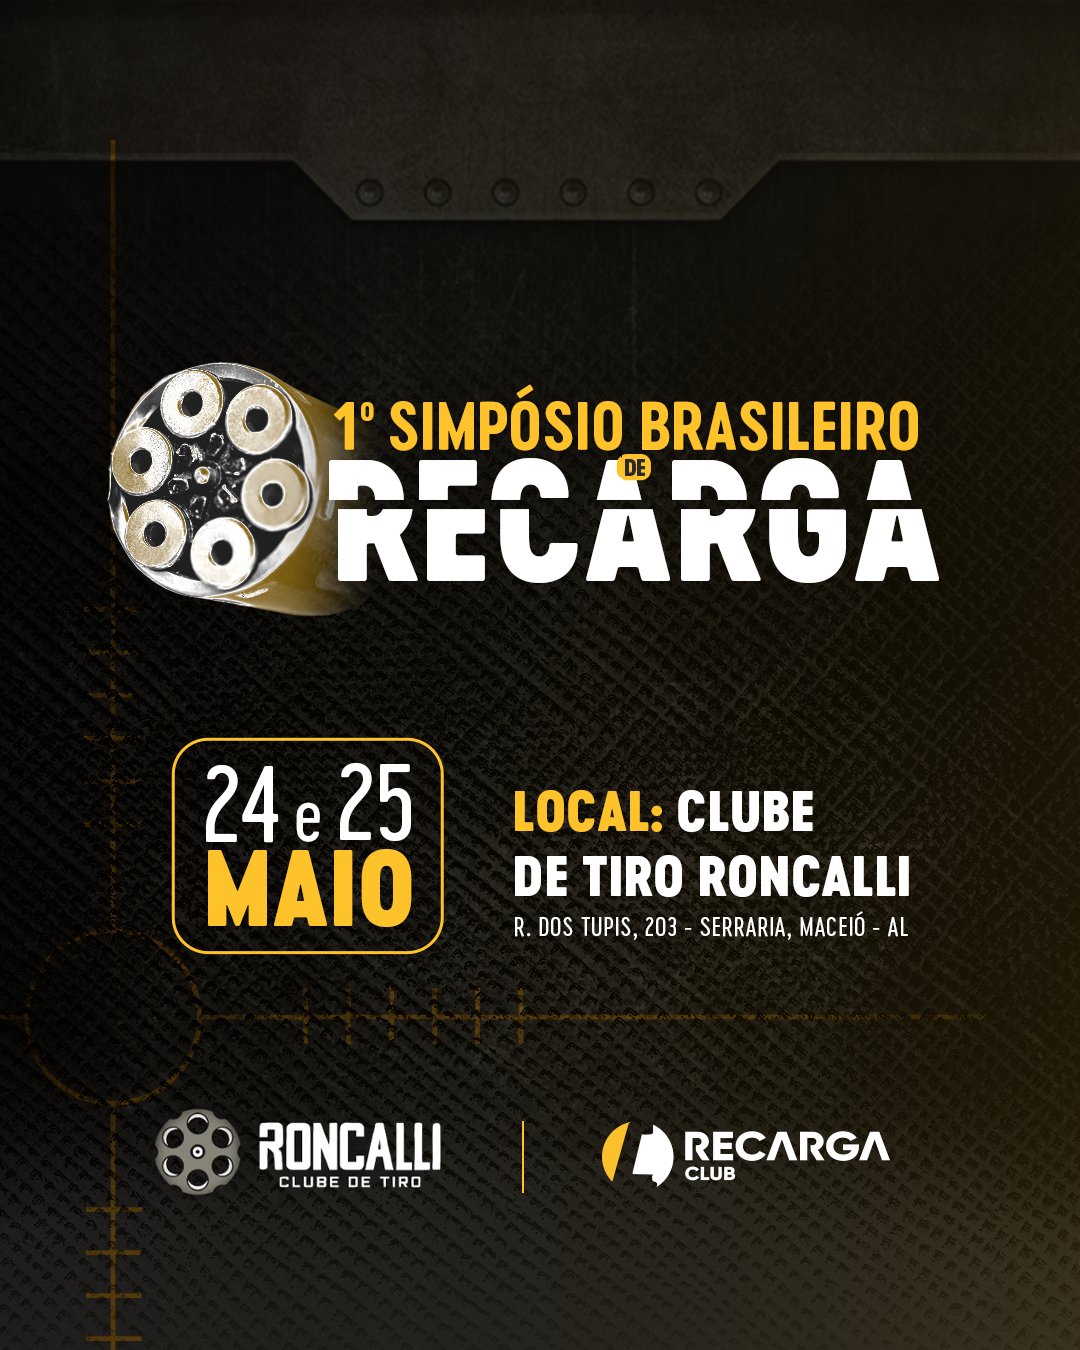 1° Simpósio Brasileiro de Recarga - Recarga Club